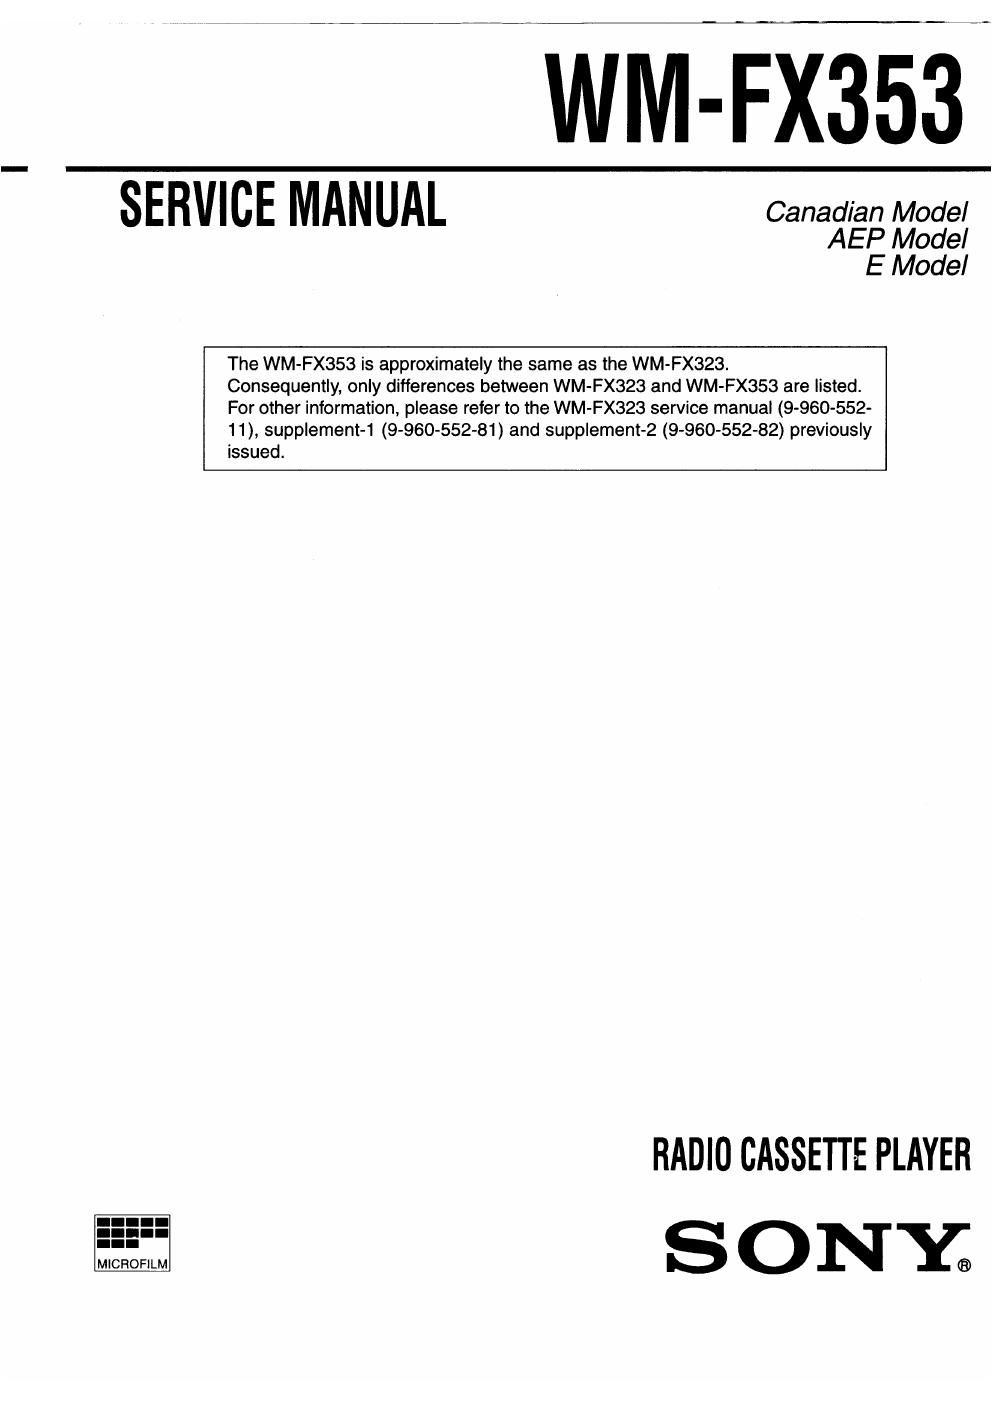 sony wm fx 353 service manual